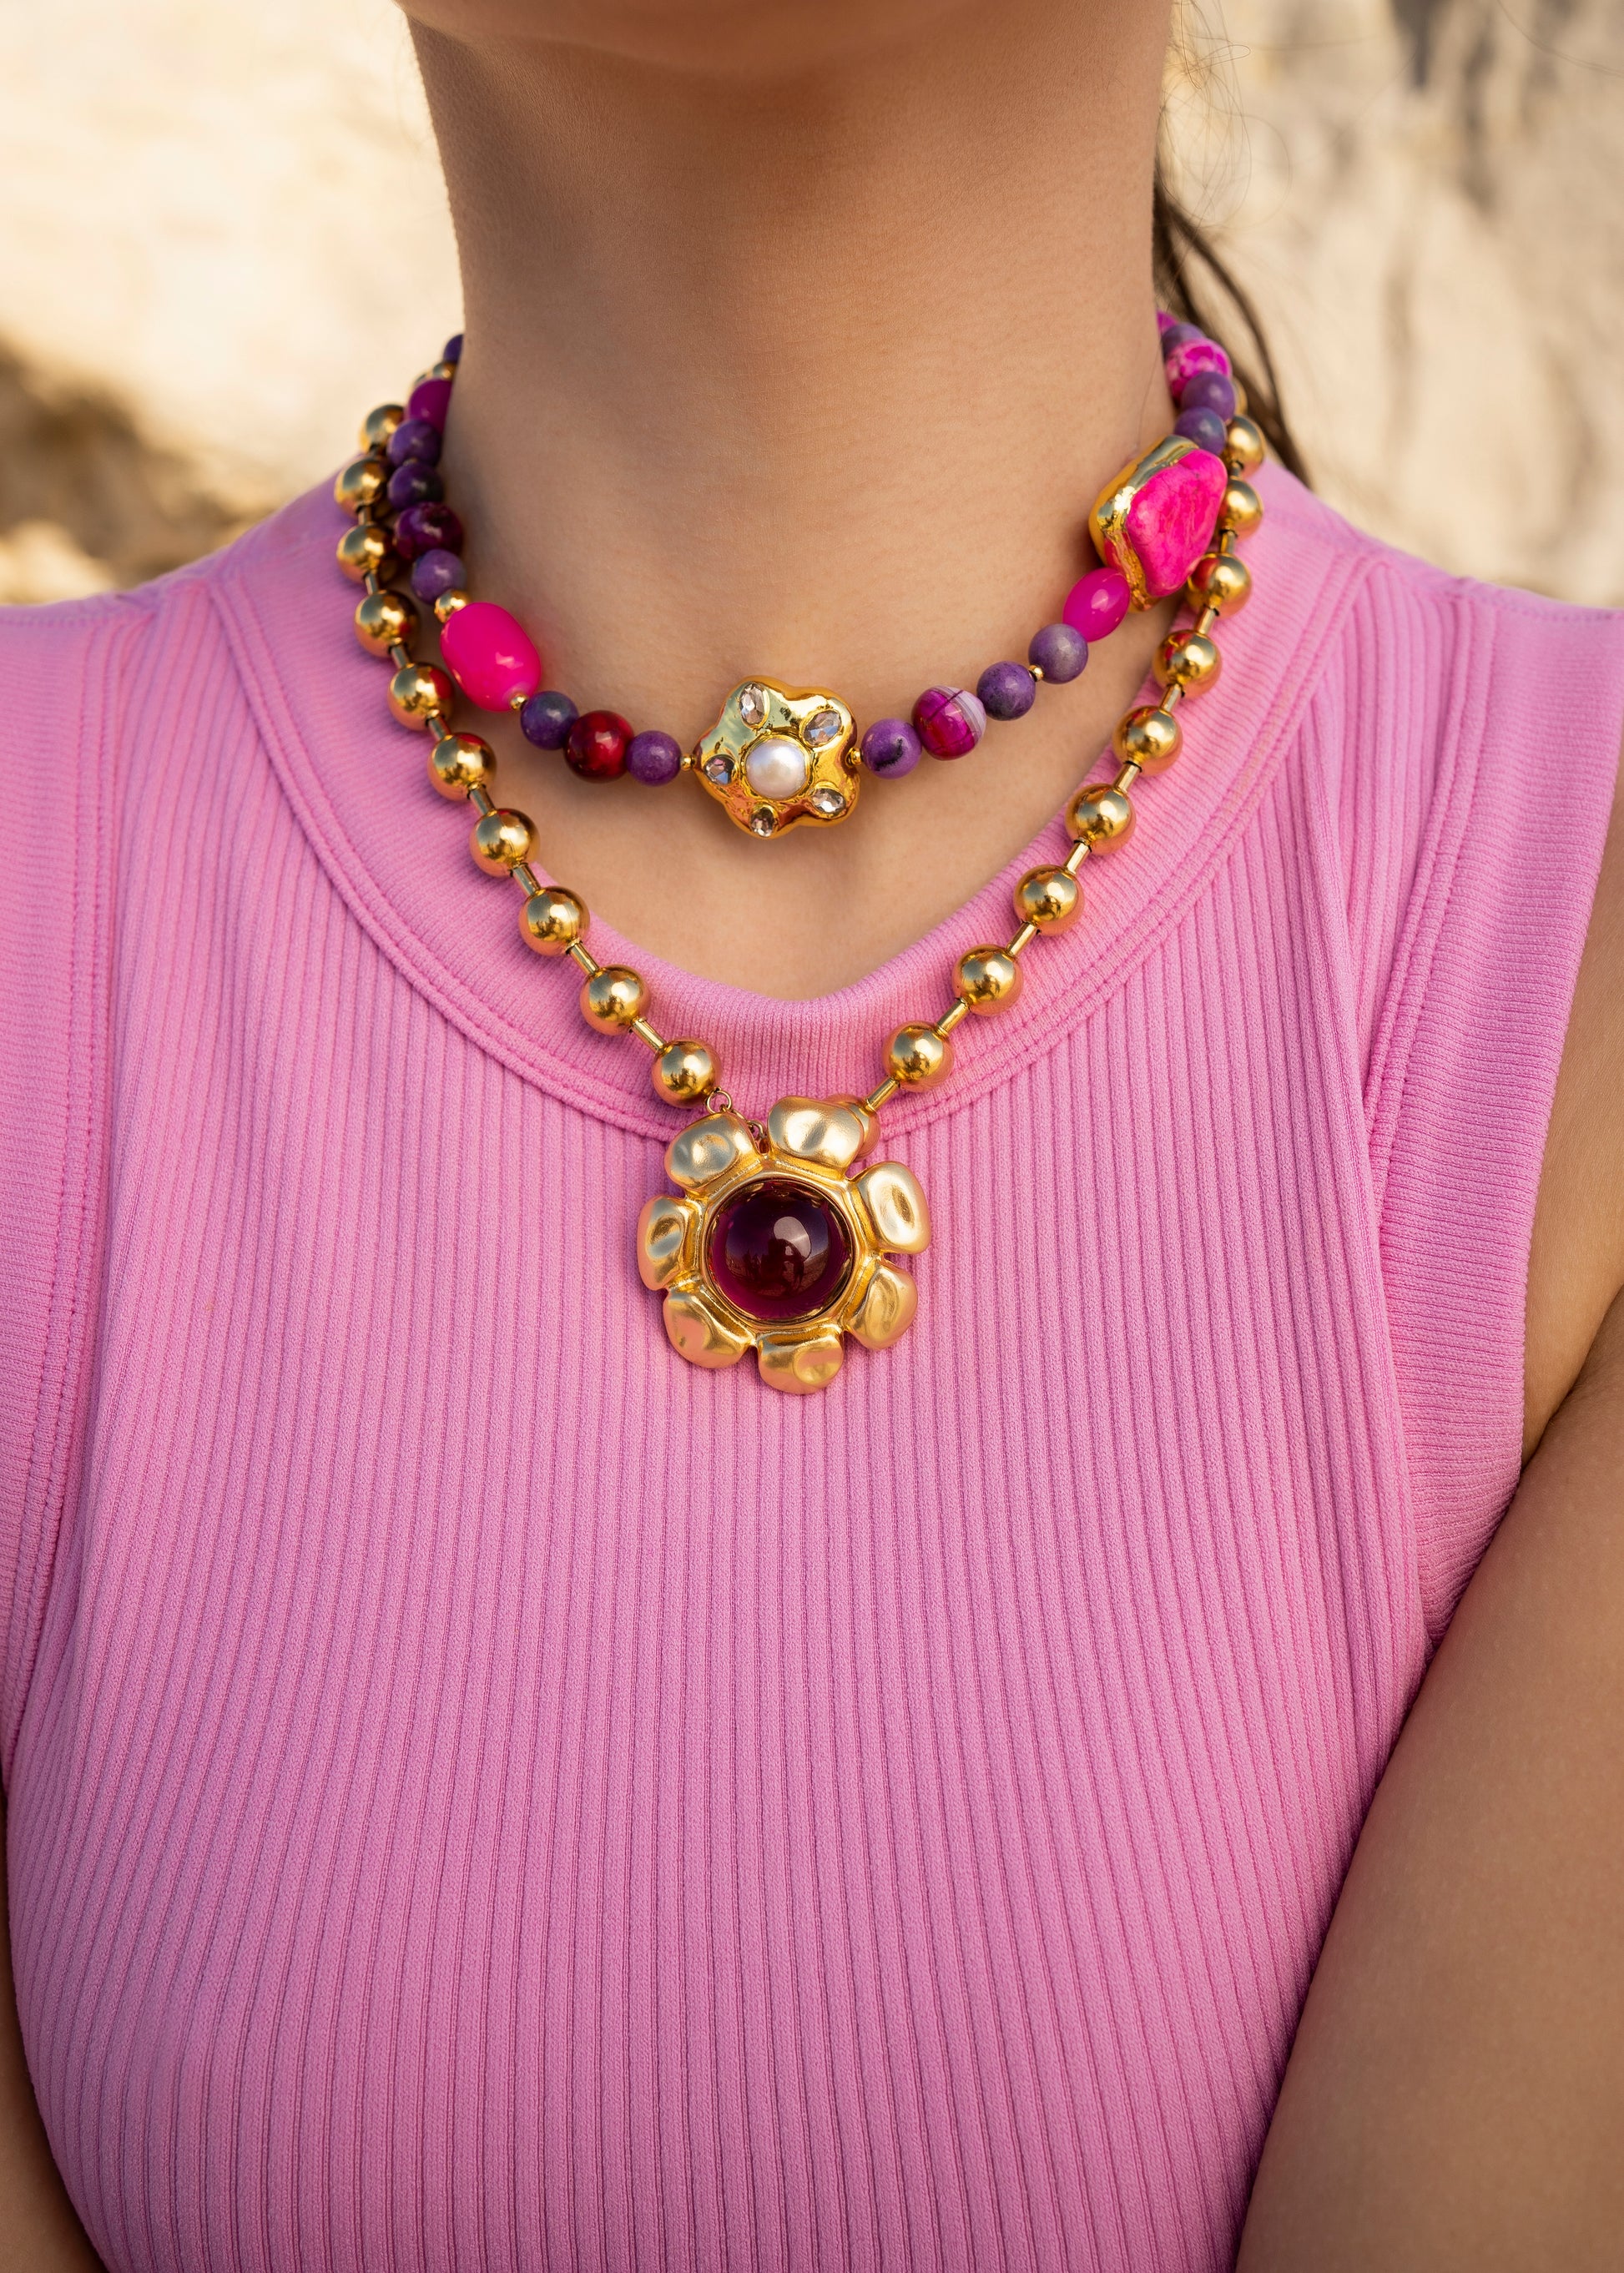 Cadena perlas morada, cadena bolas doradas, cadena con charm, collar dorado y morado, Lulás_Lulás